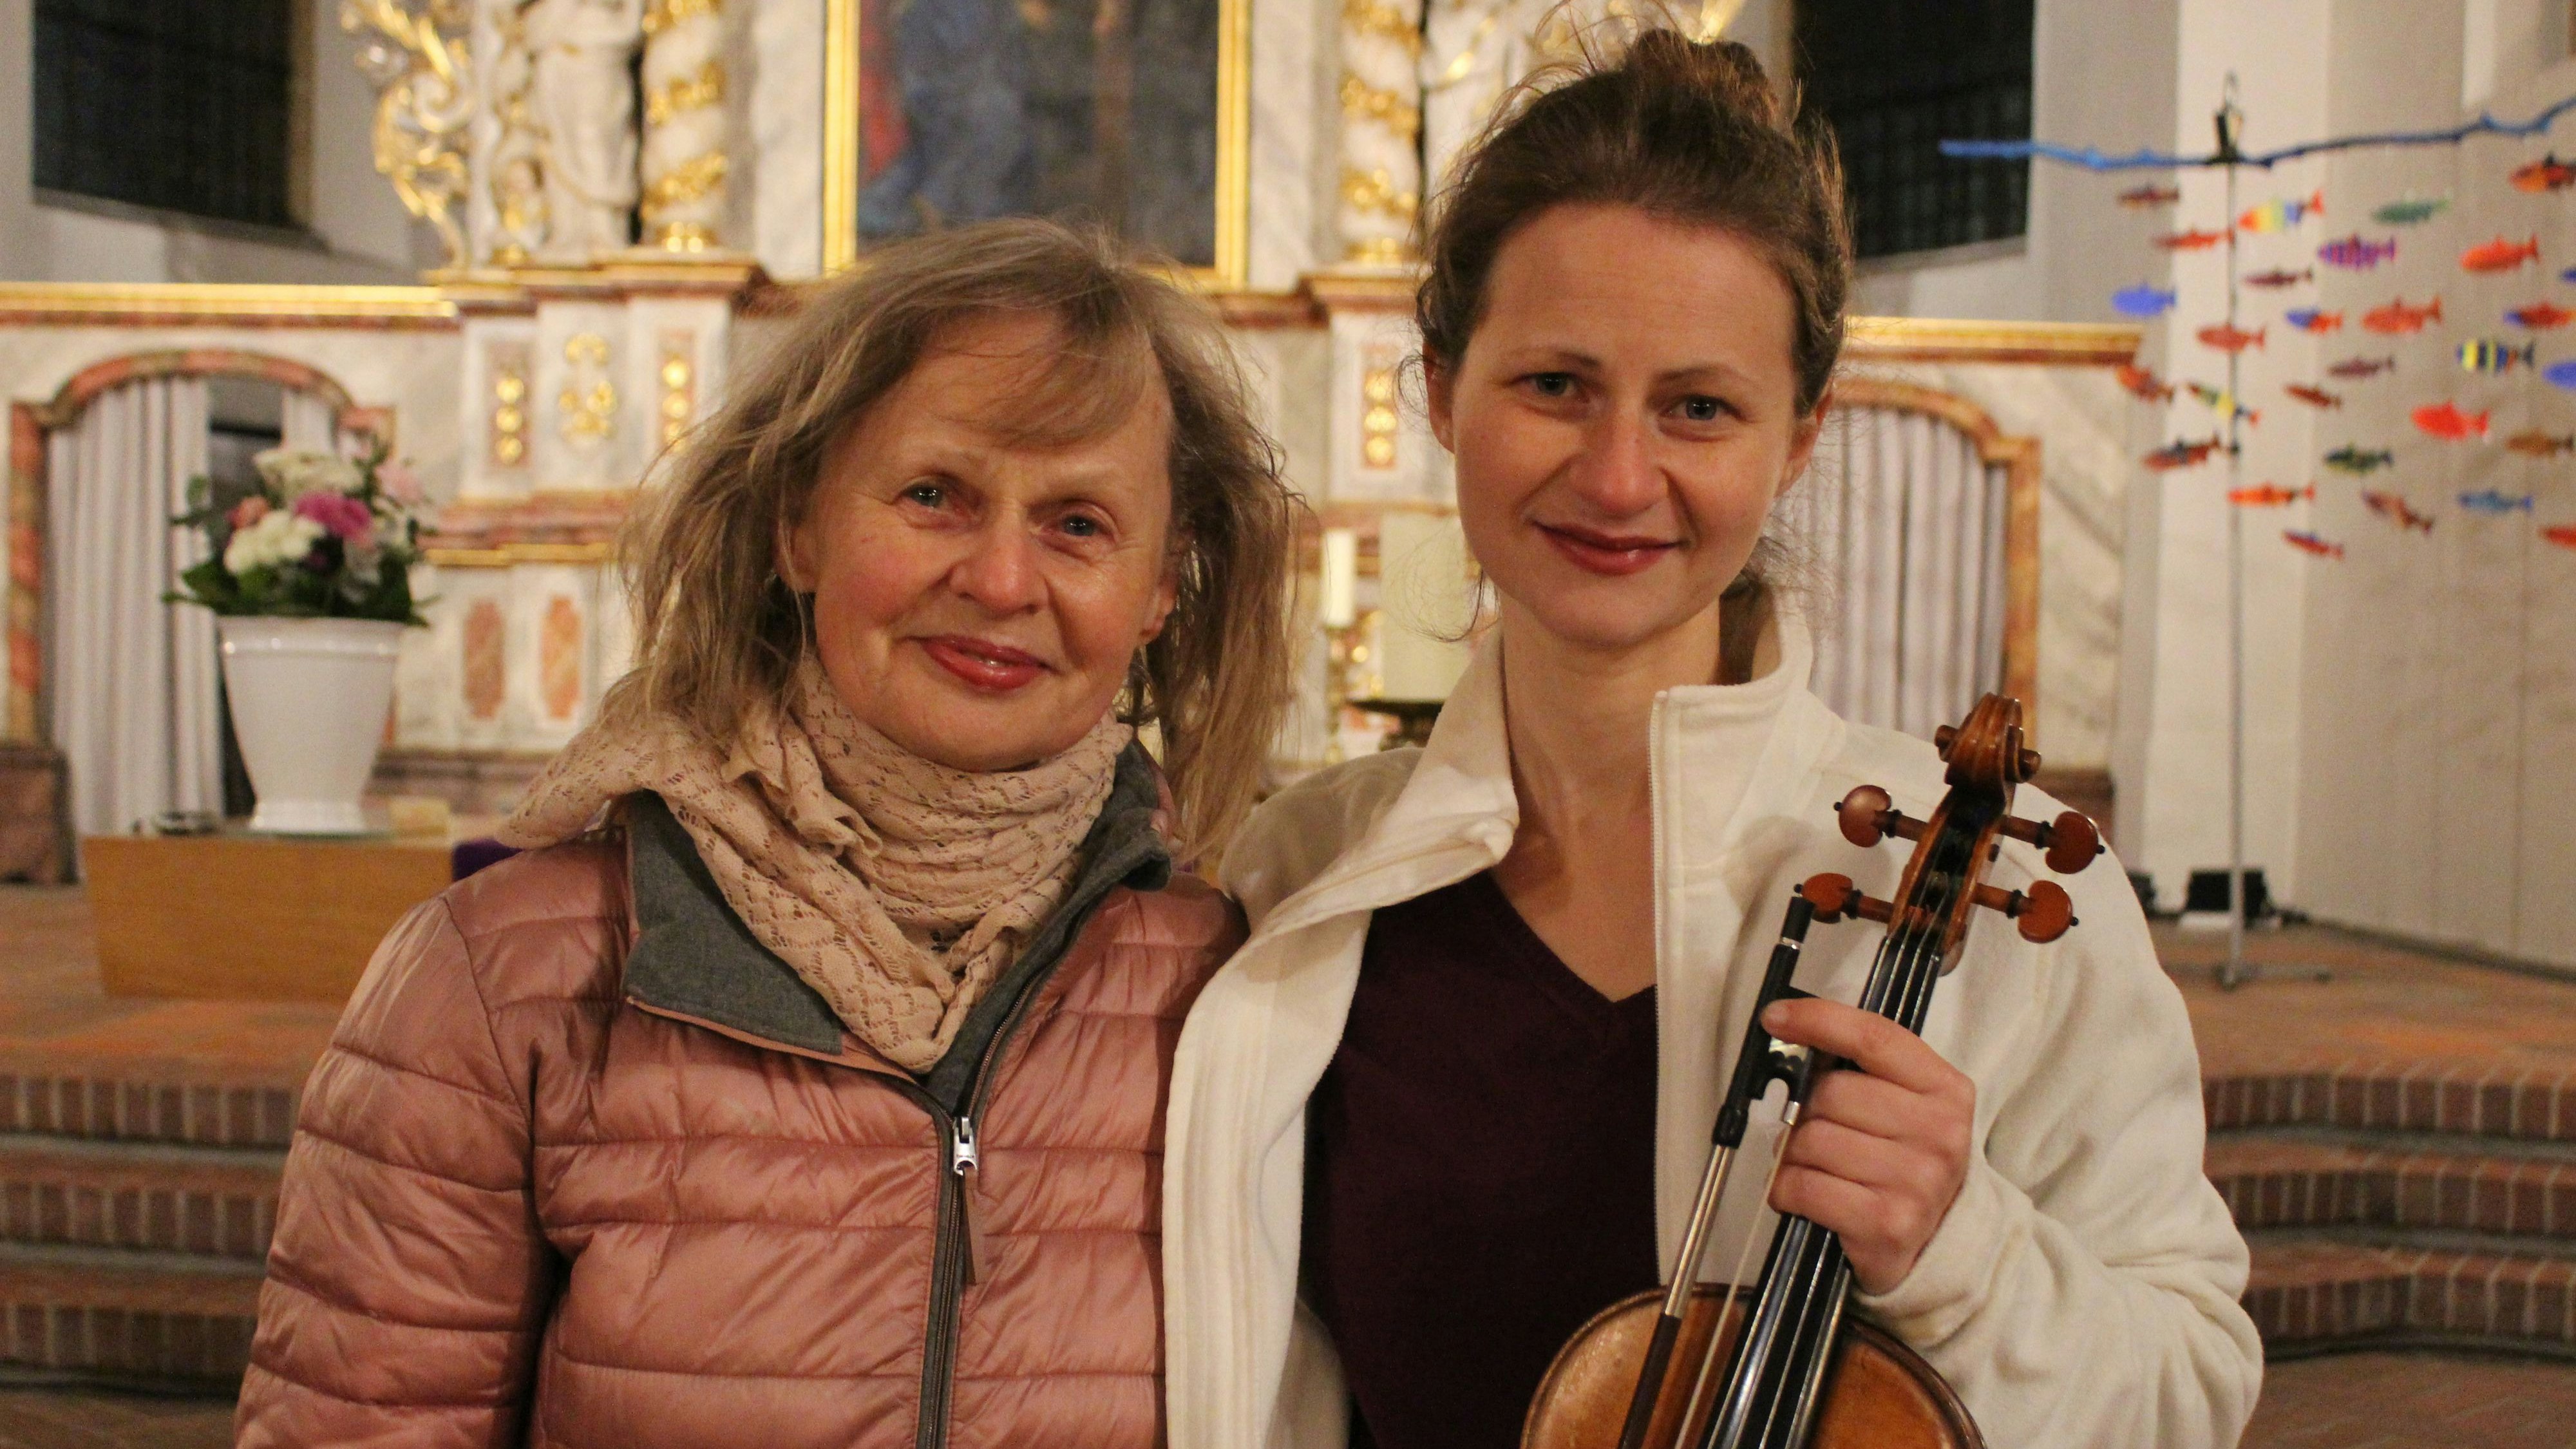 Starkes Duo: Ulrike (links) und Liv Migdal schafften mit ihrem abwechselnden Vortrag einen ganz besonderen Abend. Foto: Heinzel